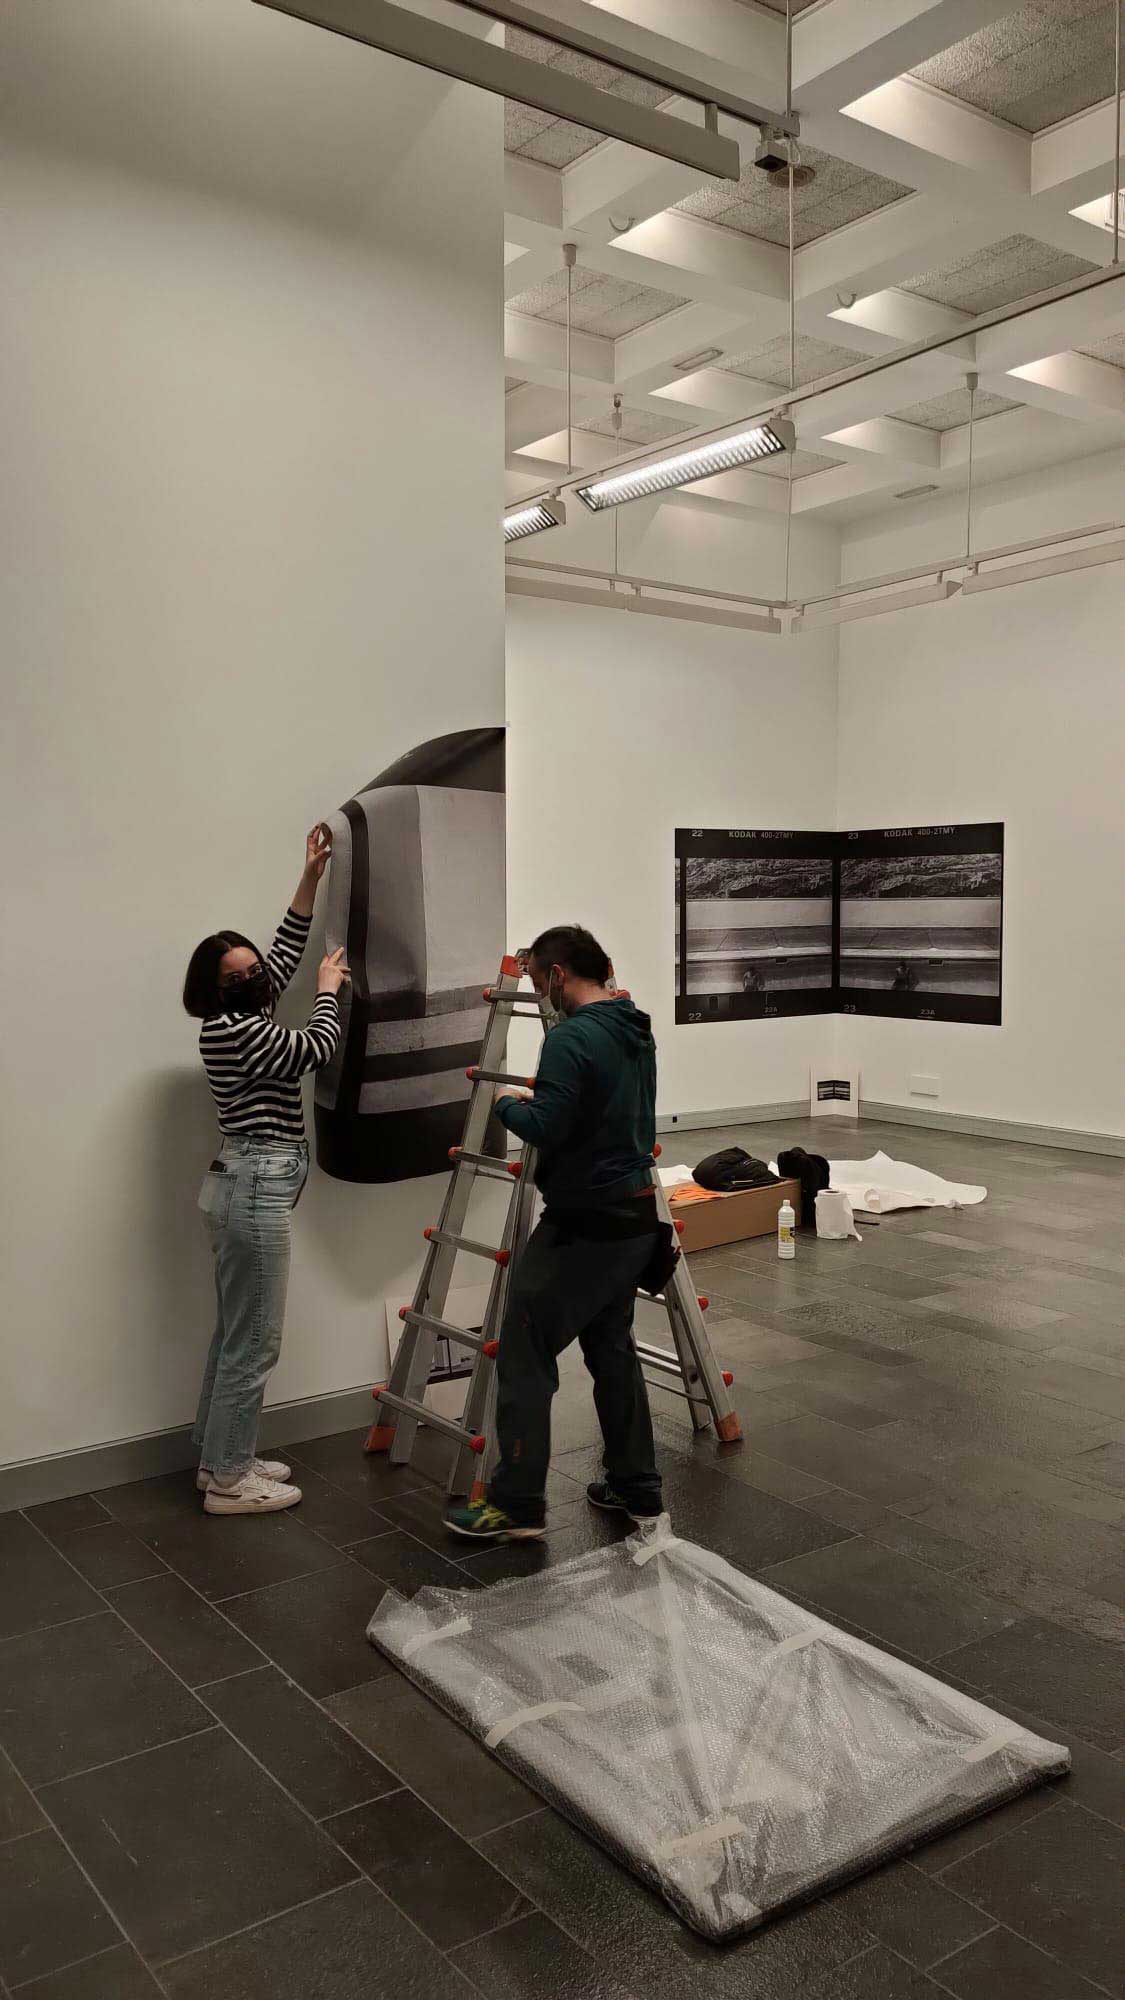 Proceso de montaje de la exposición, donde una compañera de Habemus apoya al montador de gráficas San Martin a pegar una de las fotografías en la pared.